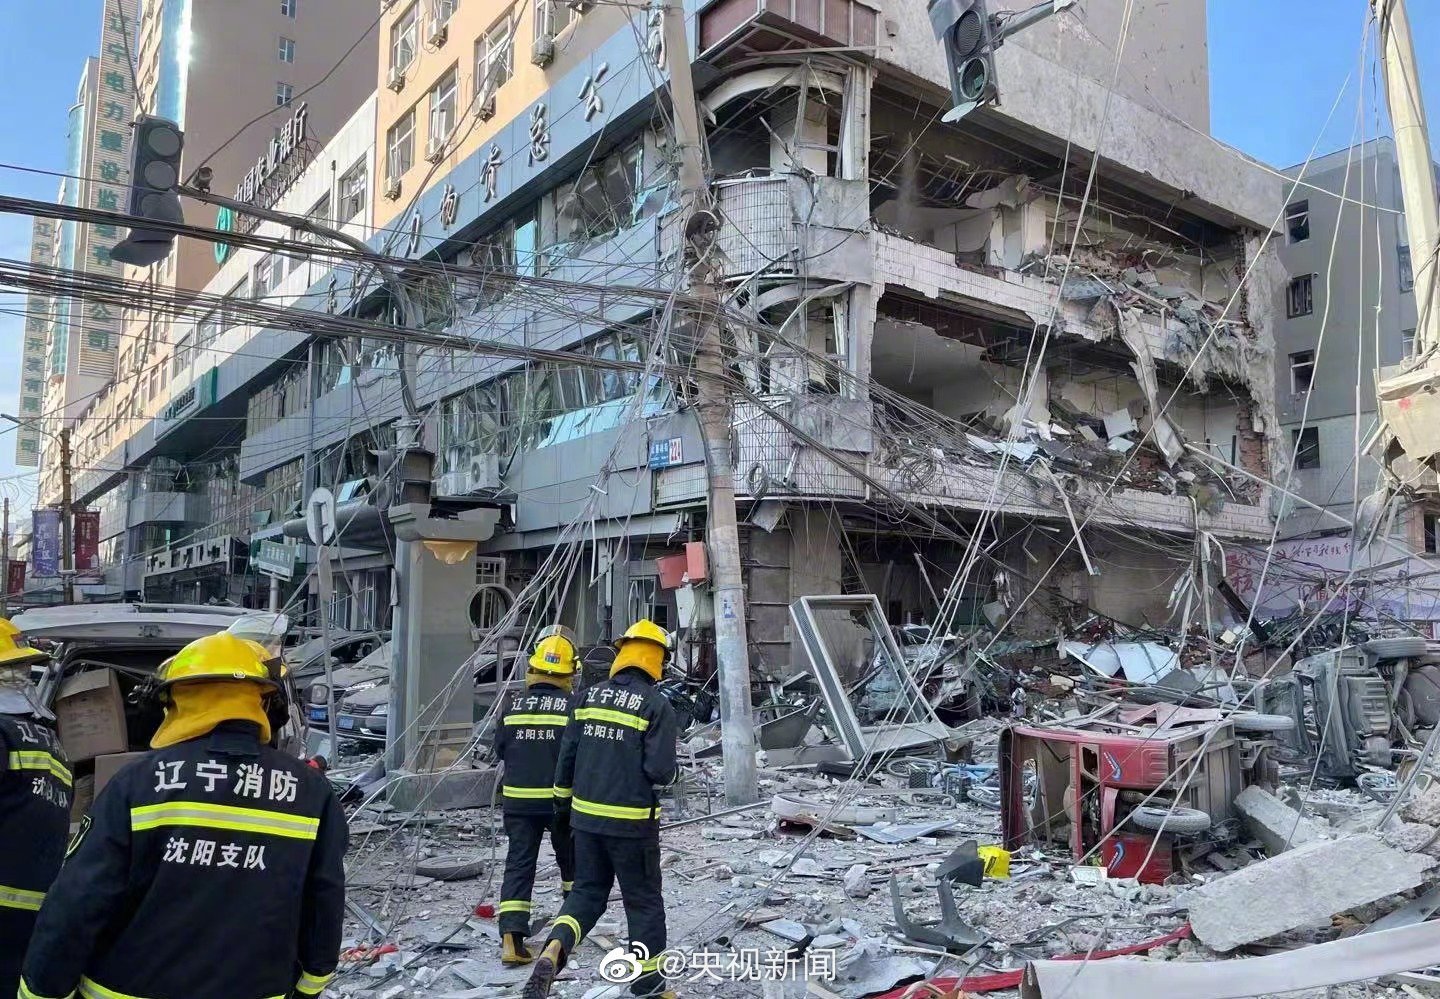 沈阳燃气爆炸事故已致4死47伤 省委书记、代省长赶赴现场